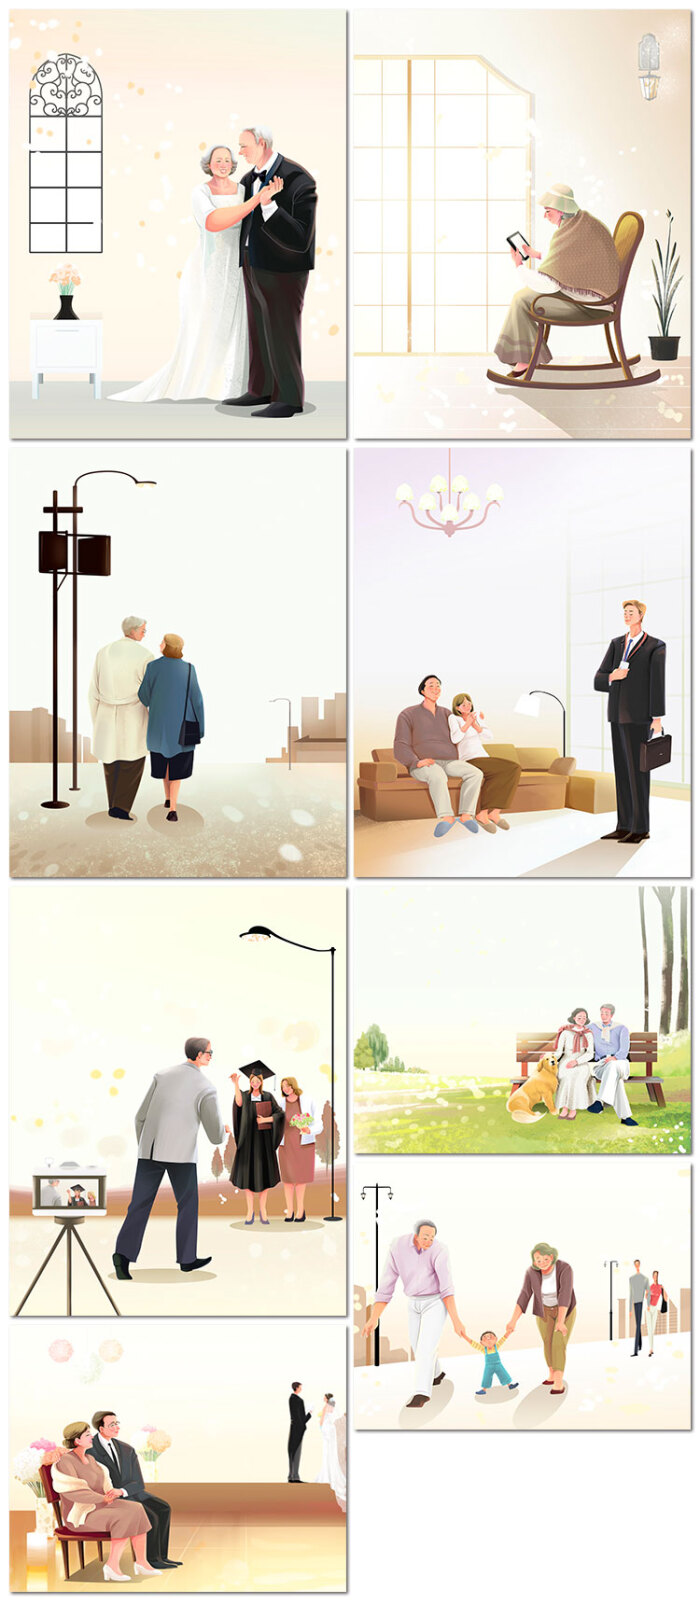 家人家庭温馨唯美爱人全家福插画老人情侣psd海报设计素材模板